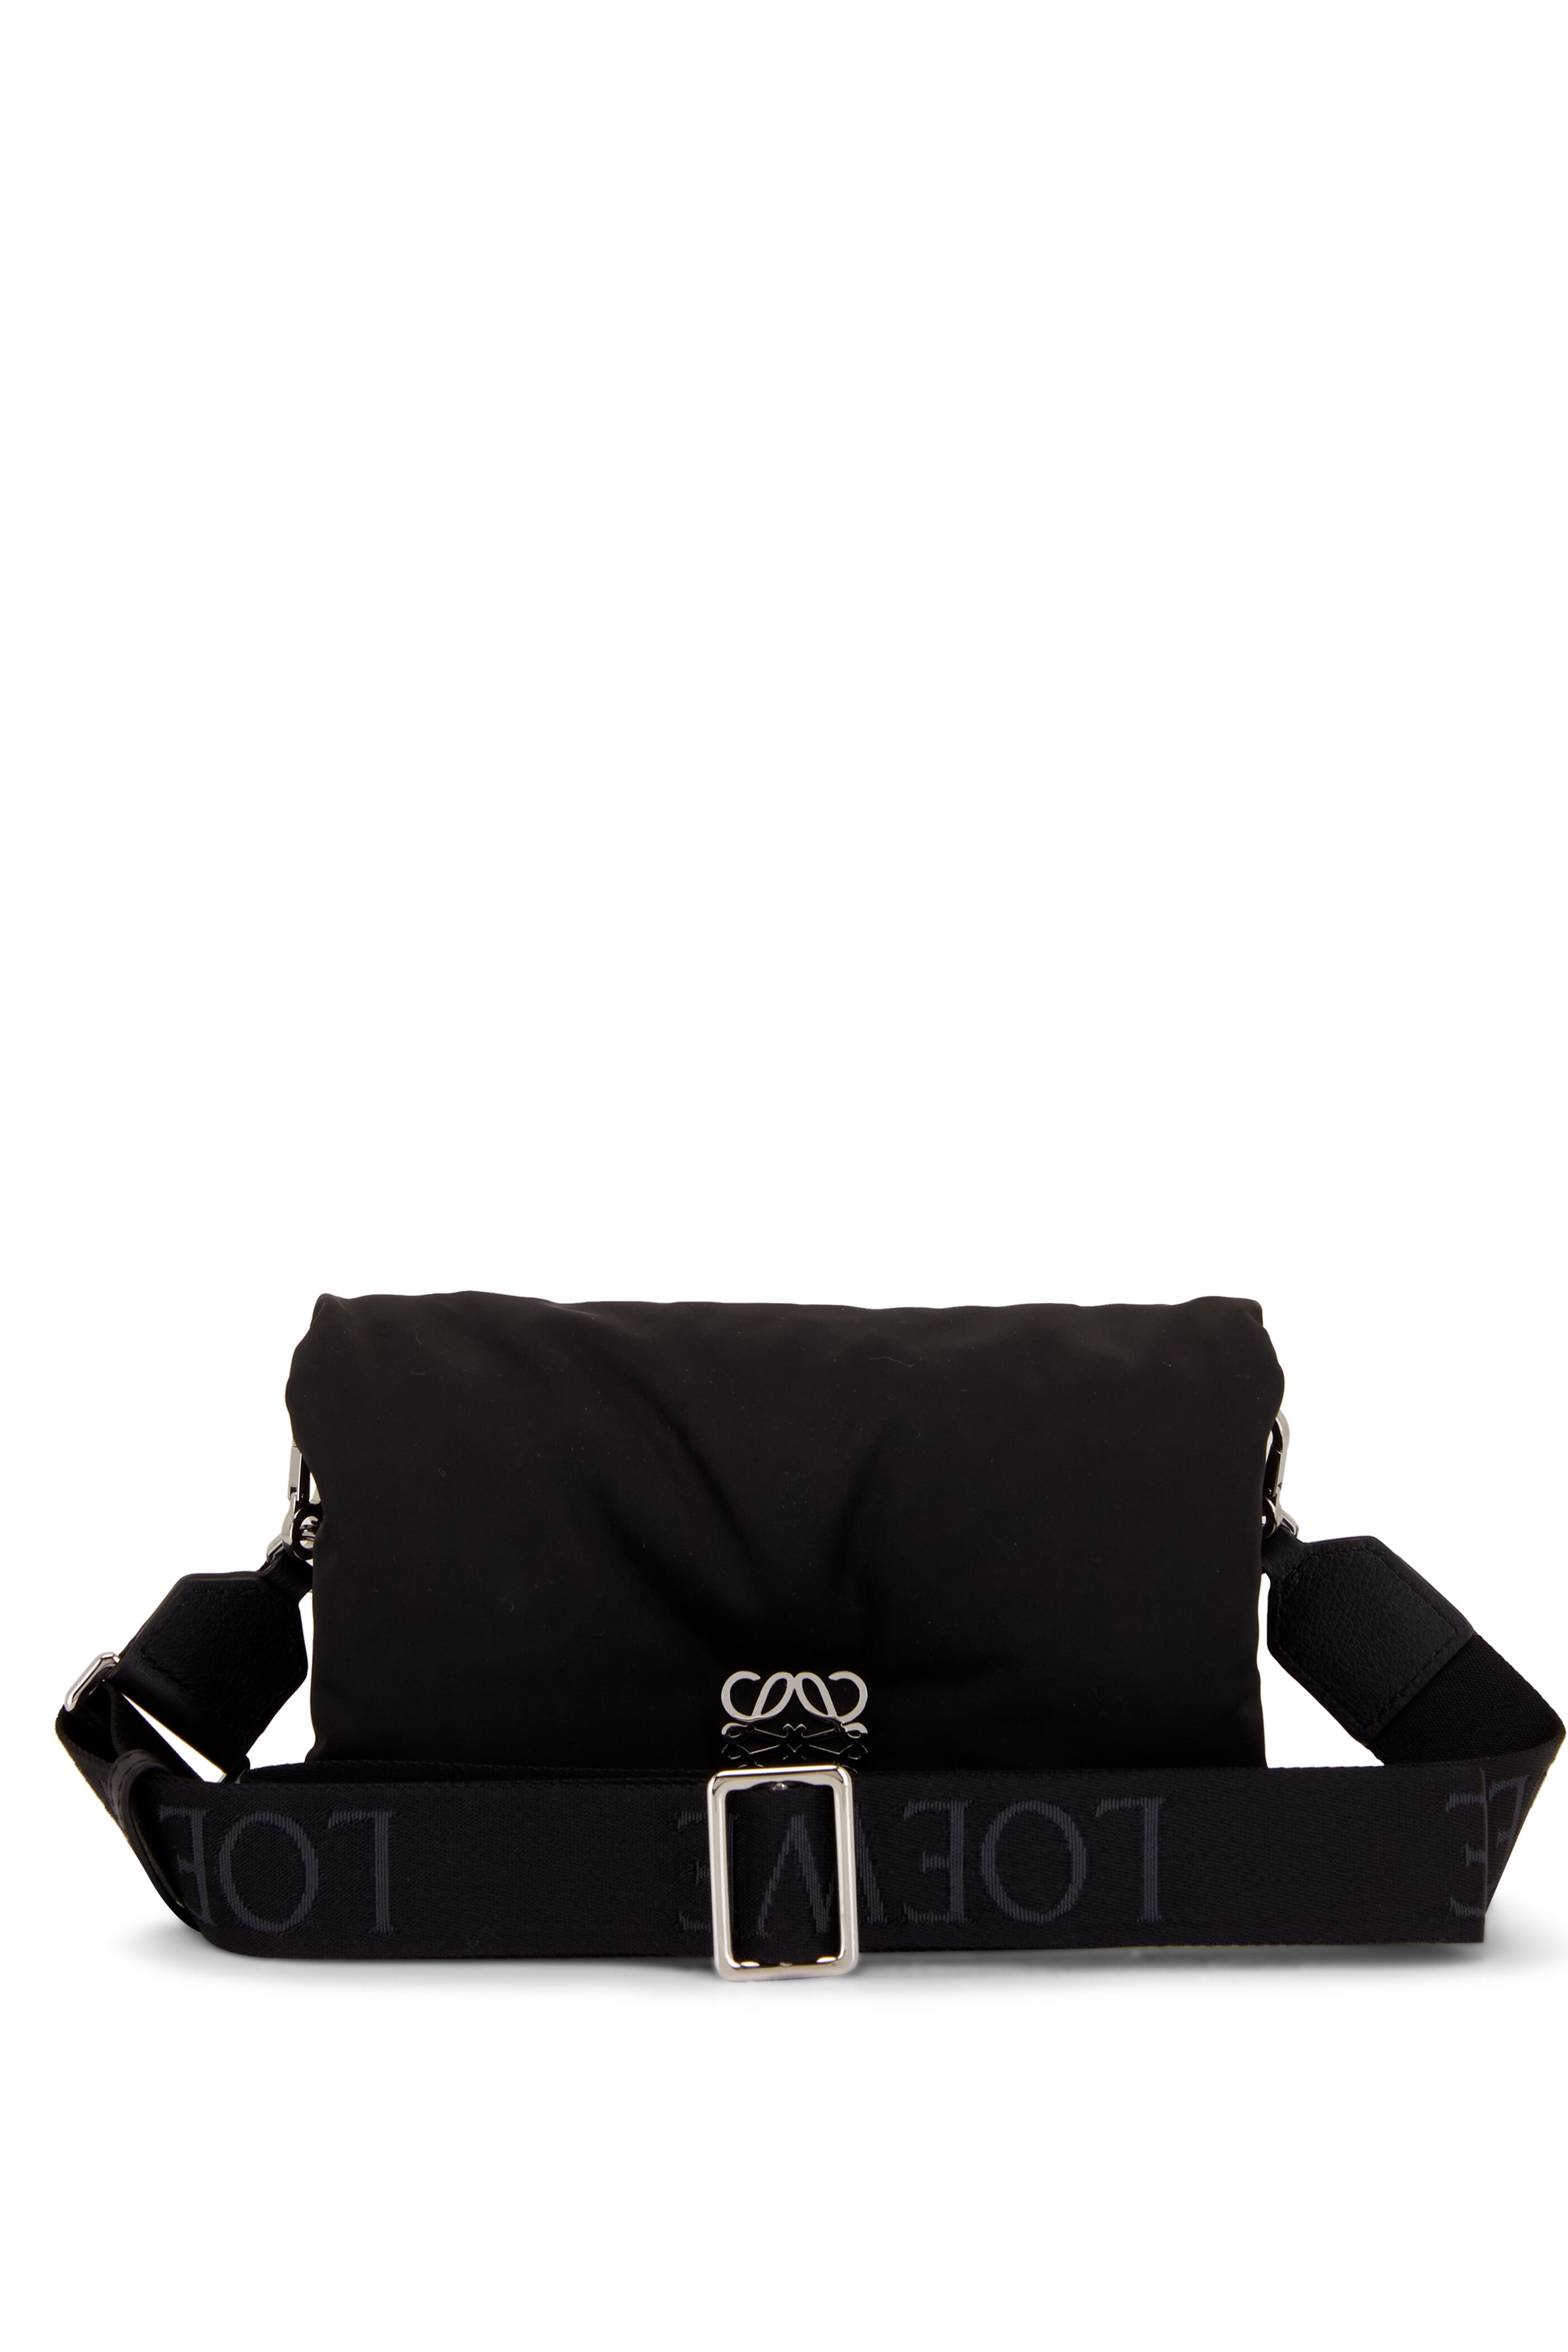 Loewe Goya Puffer Nylon Mini Bag in Black